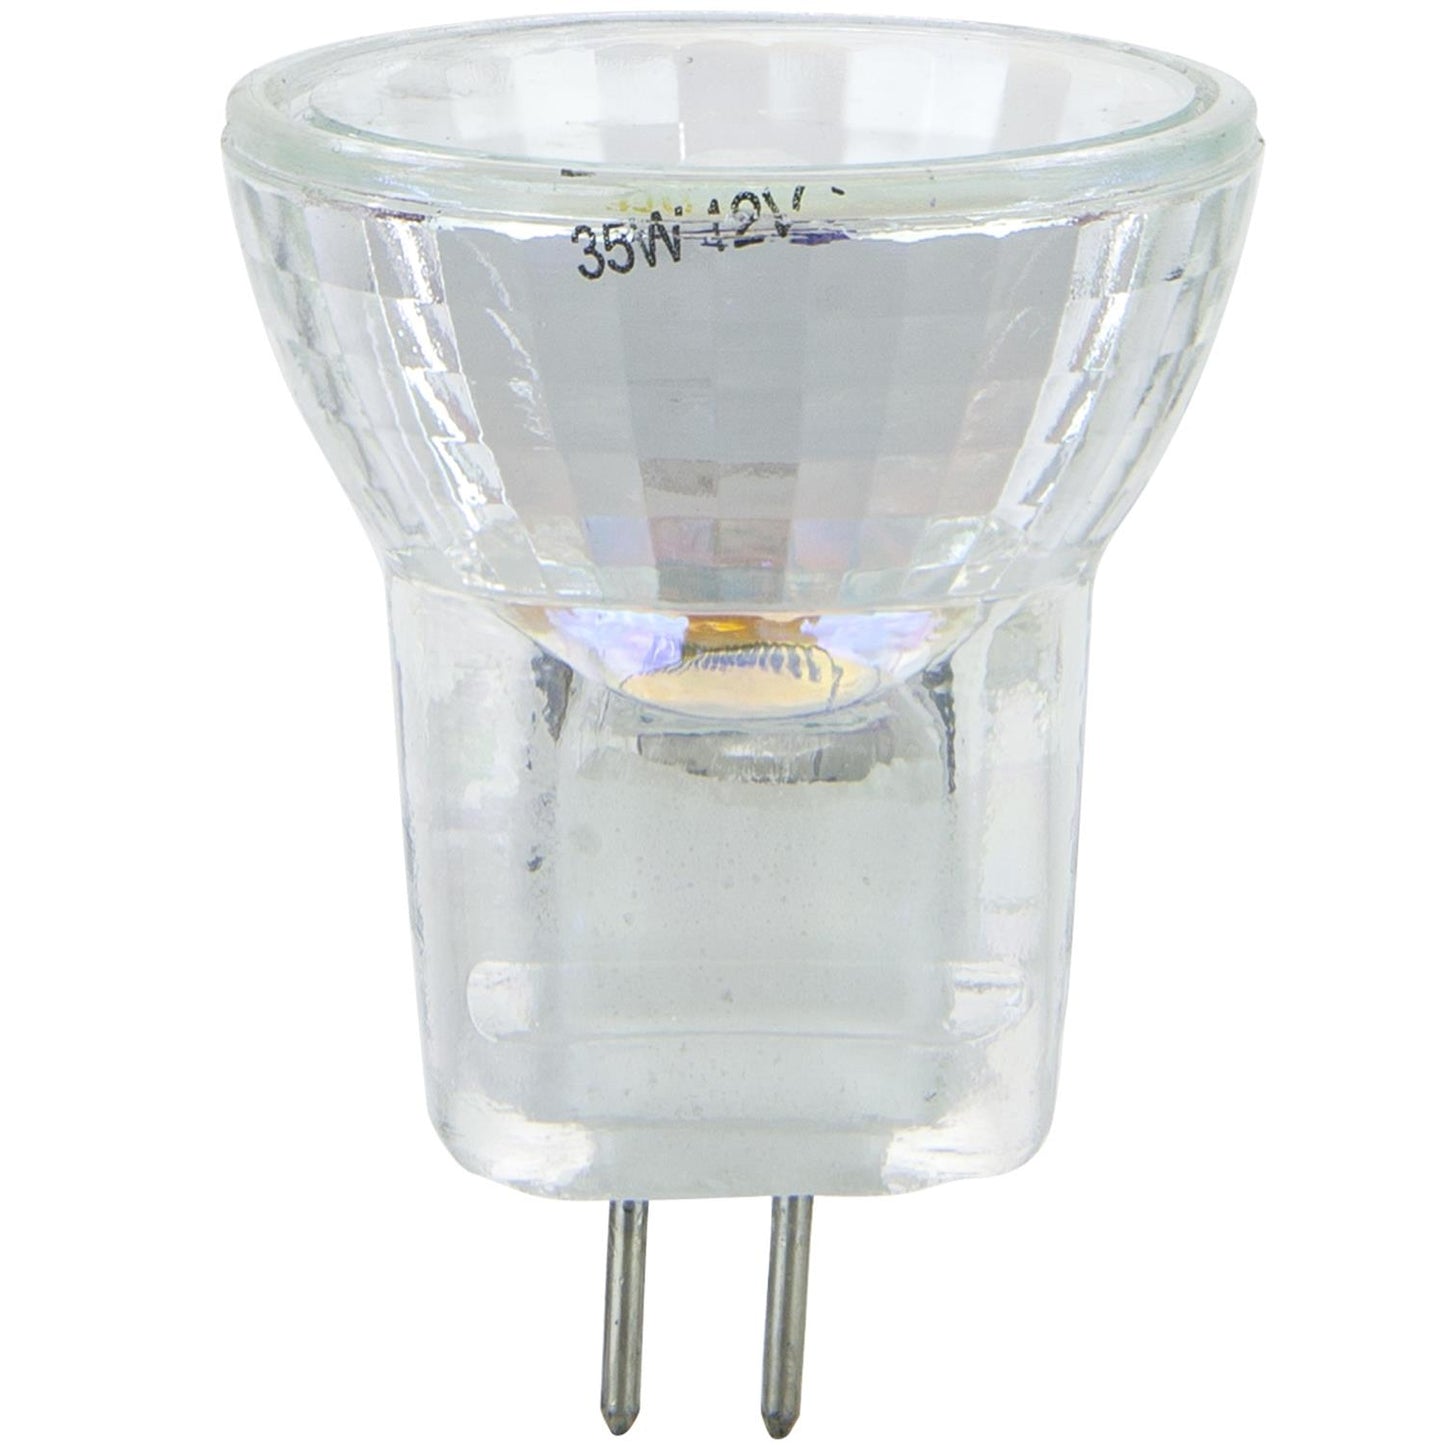 Sunlite 20MR8/CG/SP/12V 20 Watt MR8 Lamp Bi-Pin (G4) Base